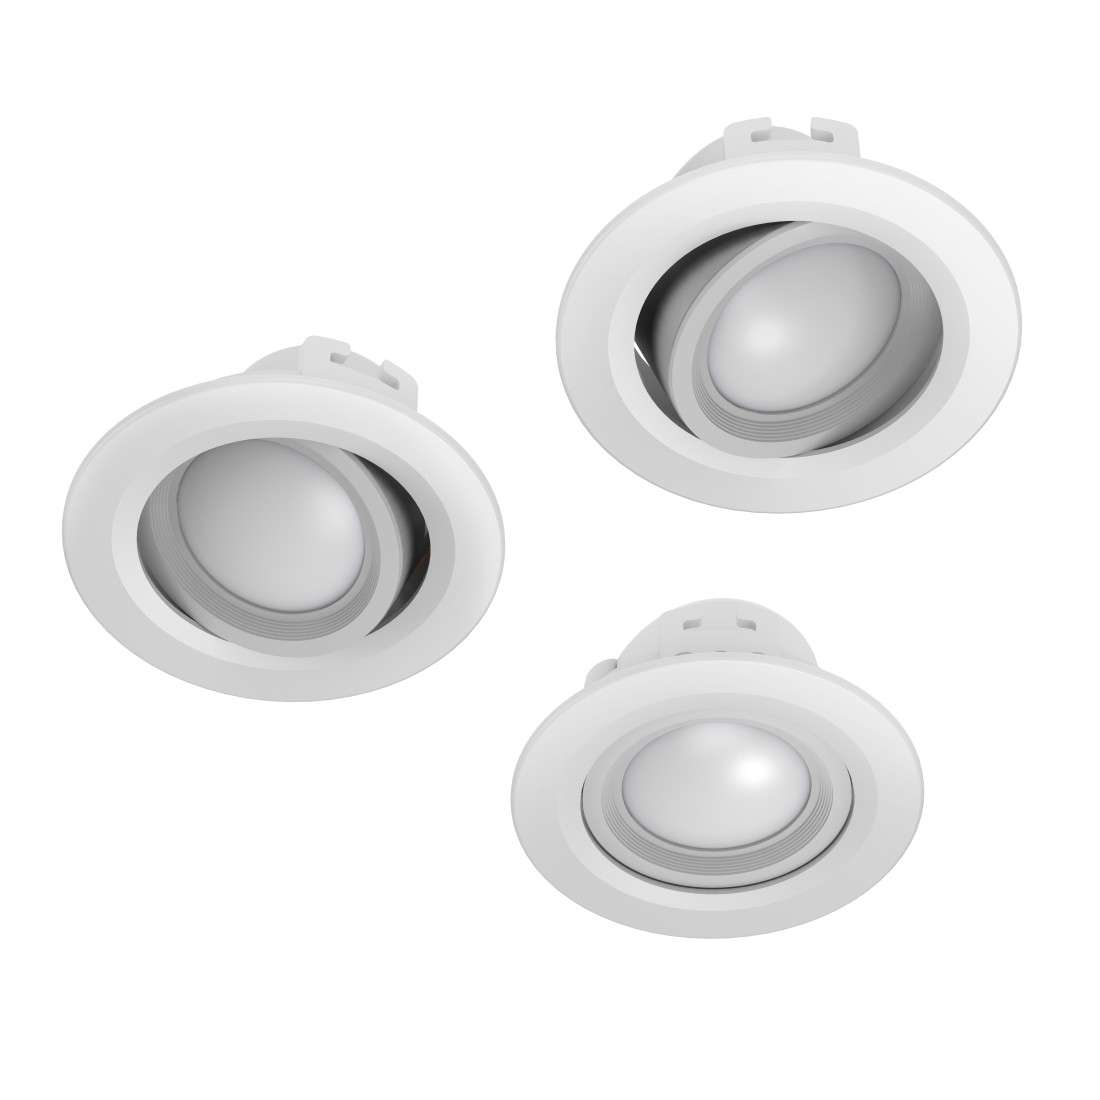 HAMA WLAN LED-Einbauspot, 5W, per Sprache/App steuern, verstellbar, 3 St., Weiß